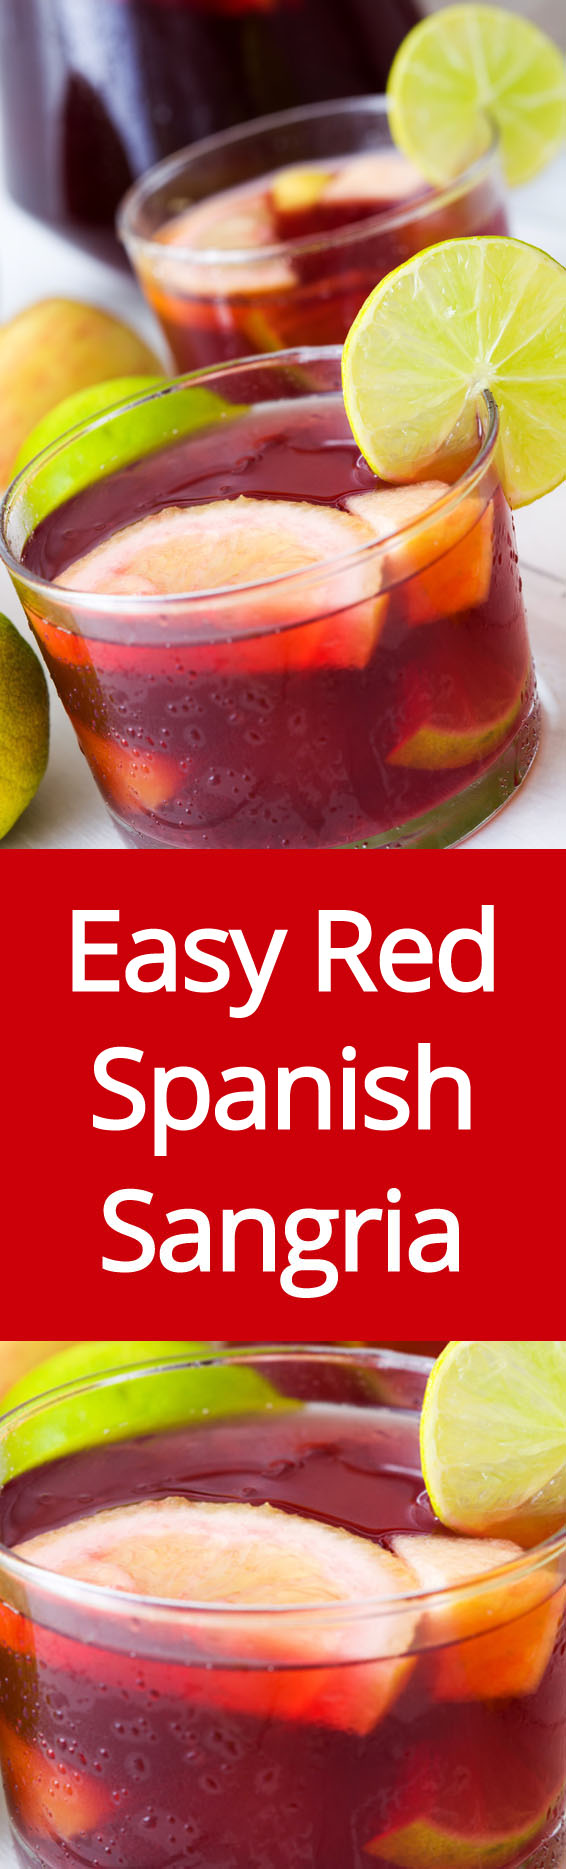 Easy Homemade Sangria Recipe - How To Make Spanish Red Wine Sangria | MelanieCooks.com